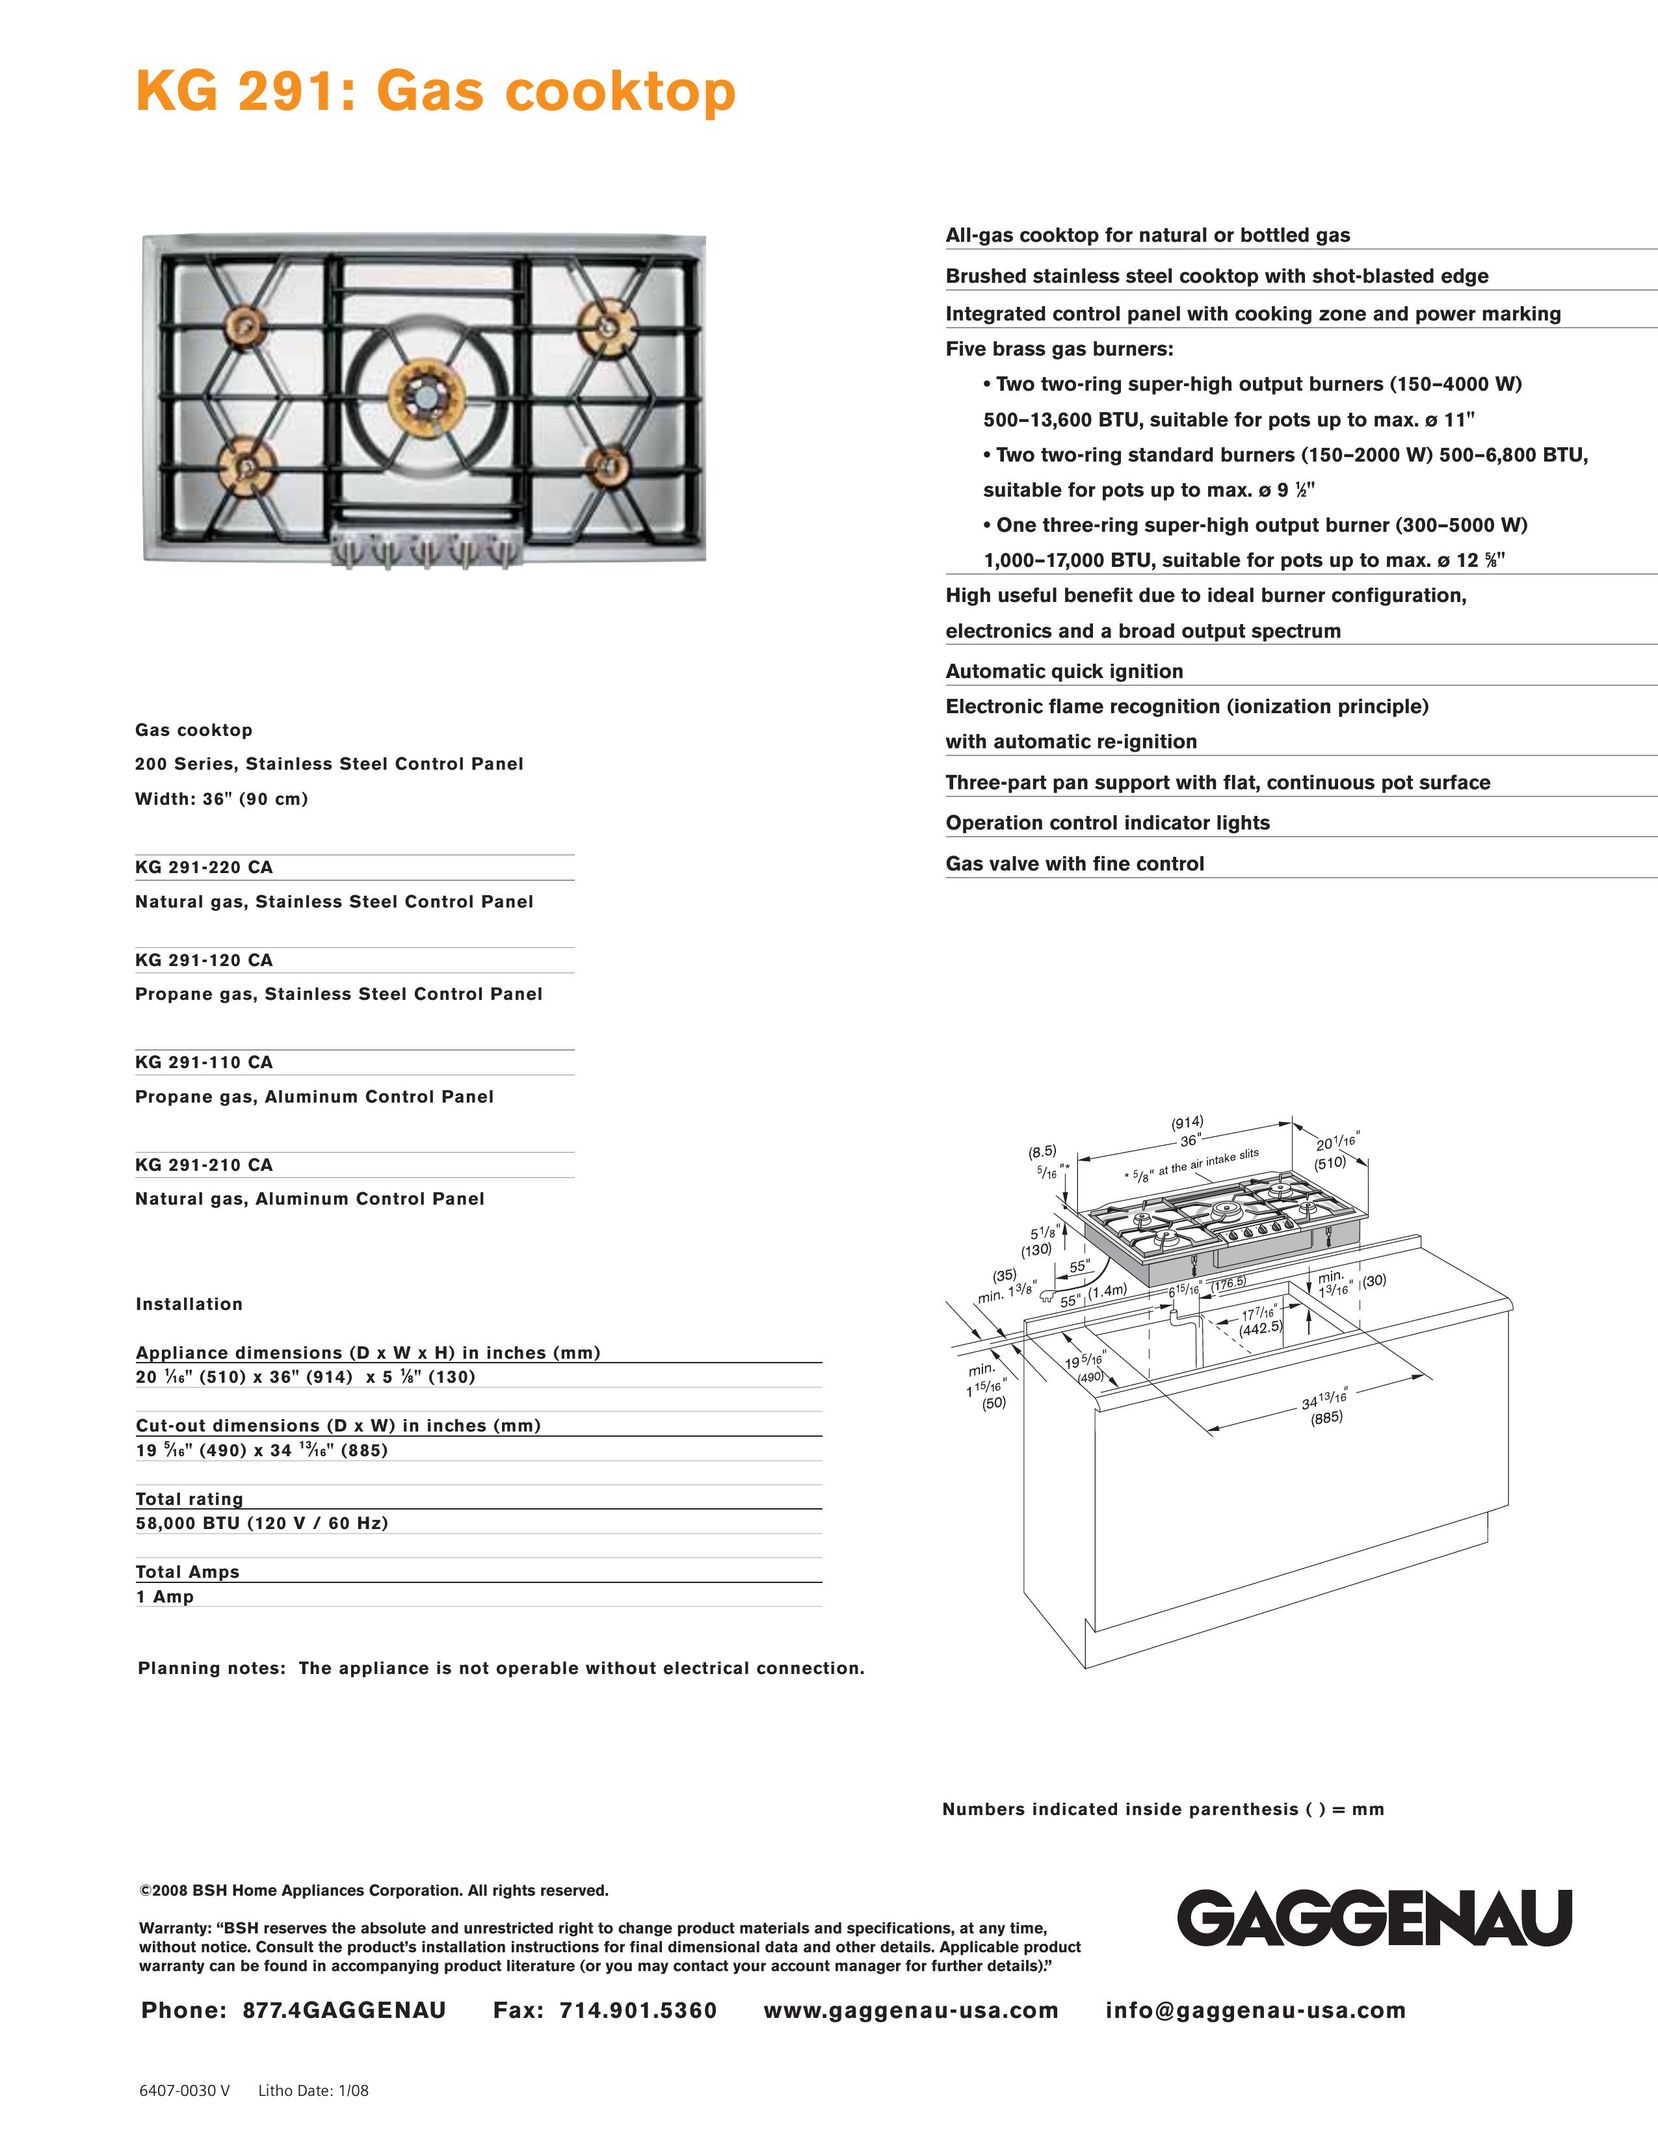 Gaggenau KG 291-120 CA Cooktop User Manual